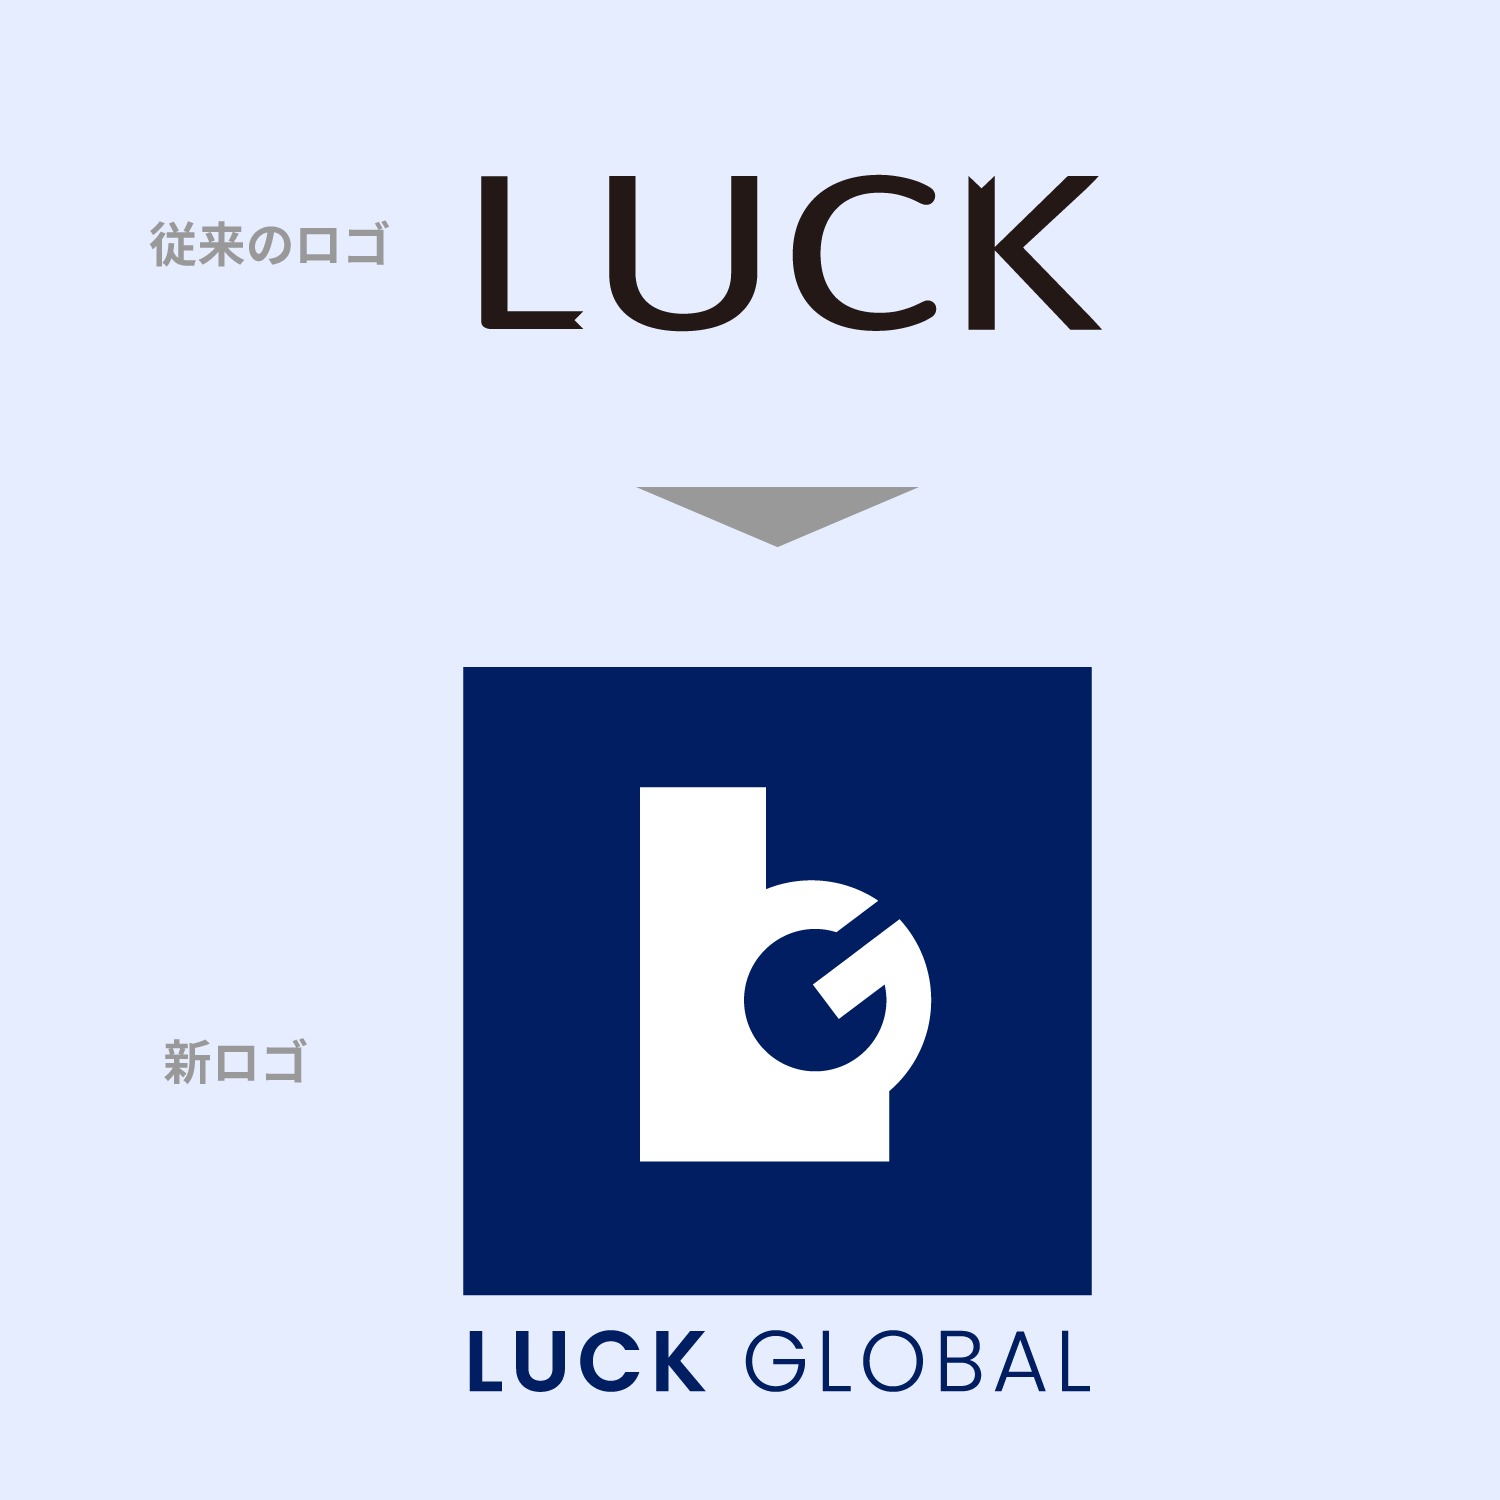 コーポレートロゴ刷新のお知らせ 株式会社LUCK